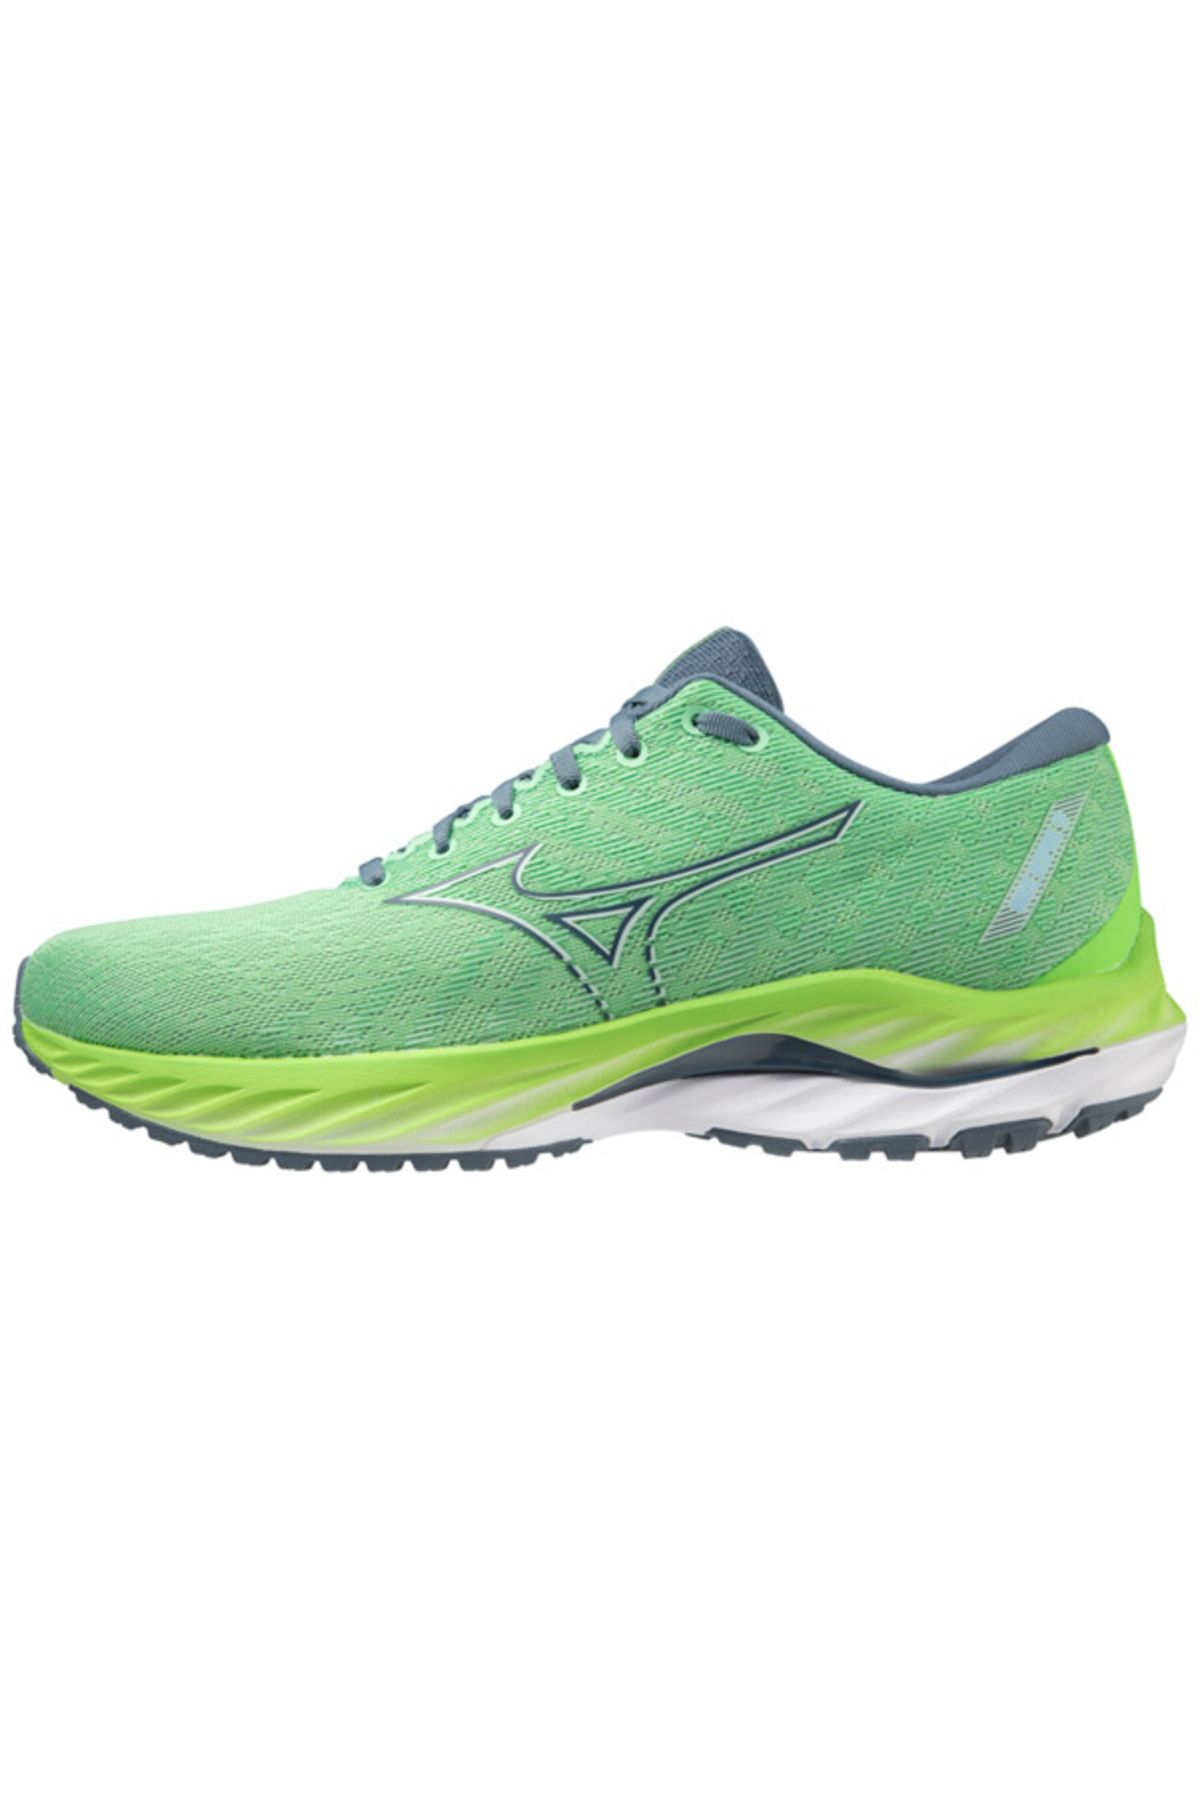 Mizuno Wave Inspire 19 Erkek Koşu Ayakkabısı Yeşil